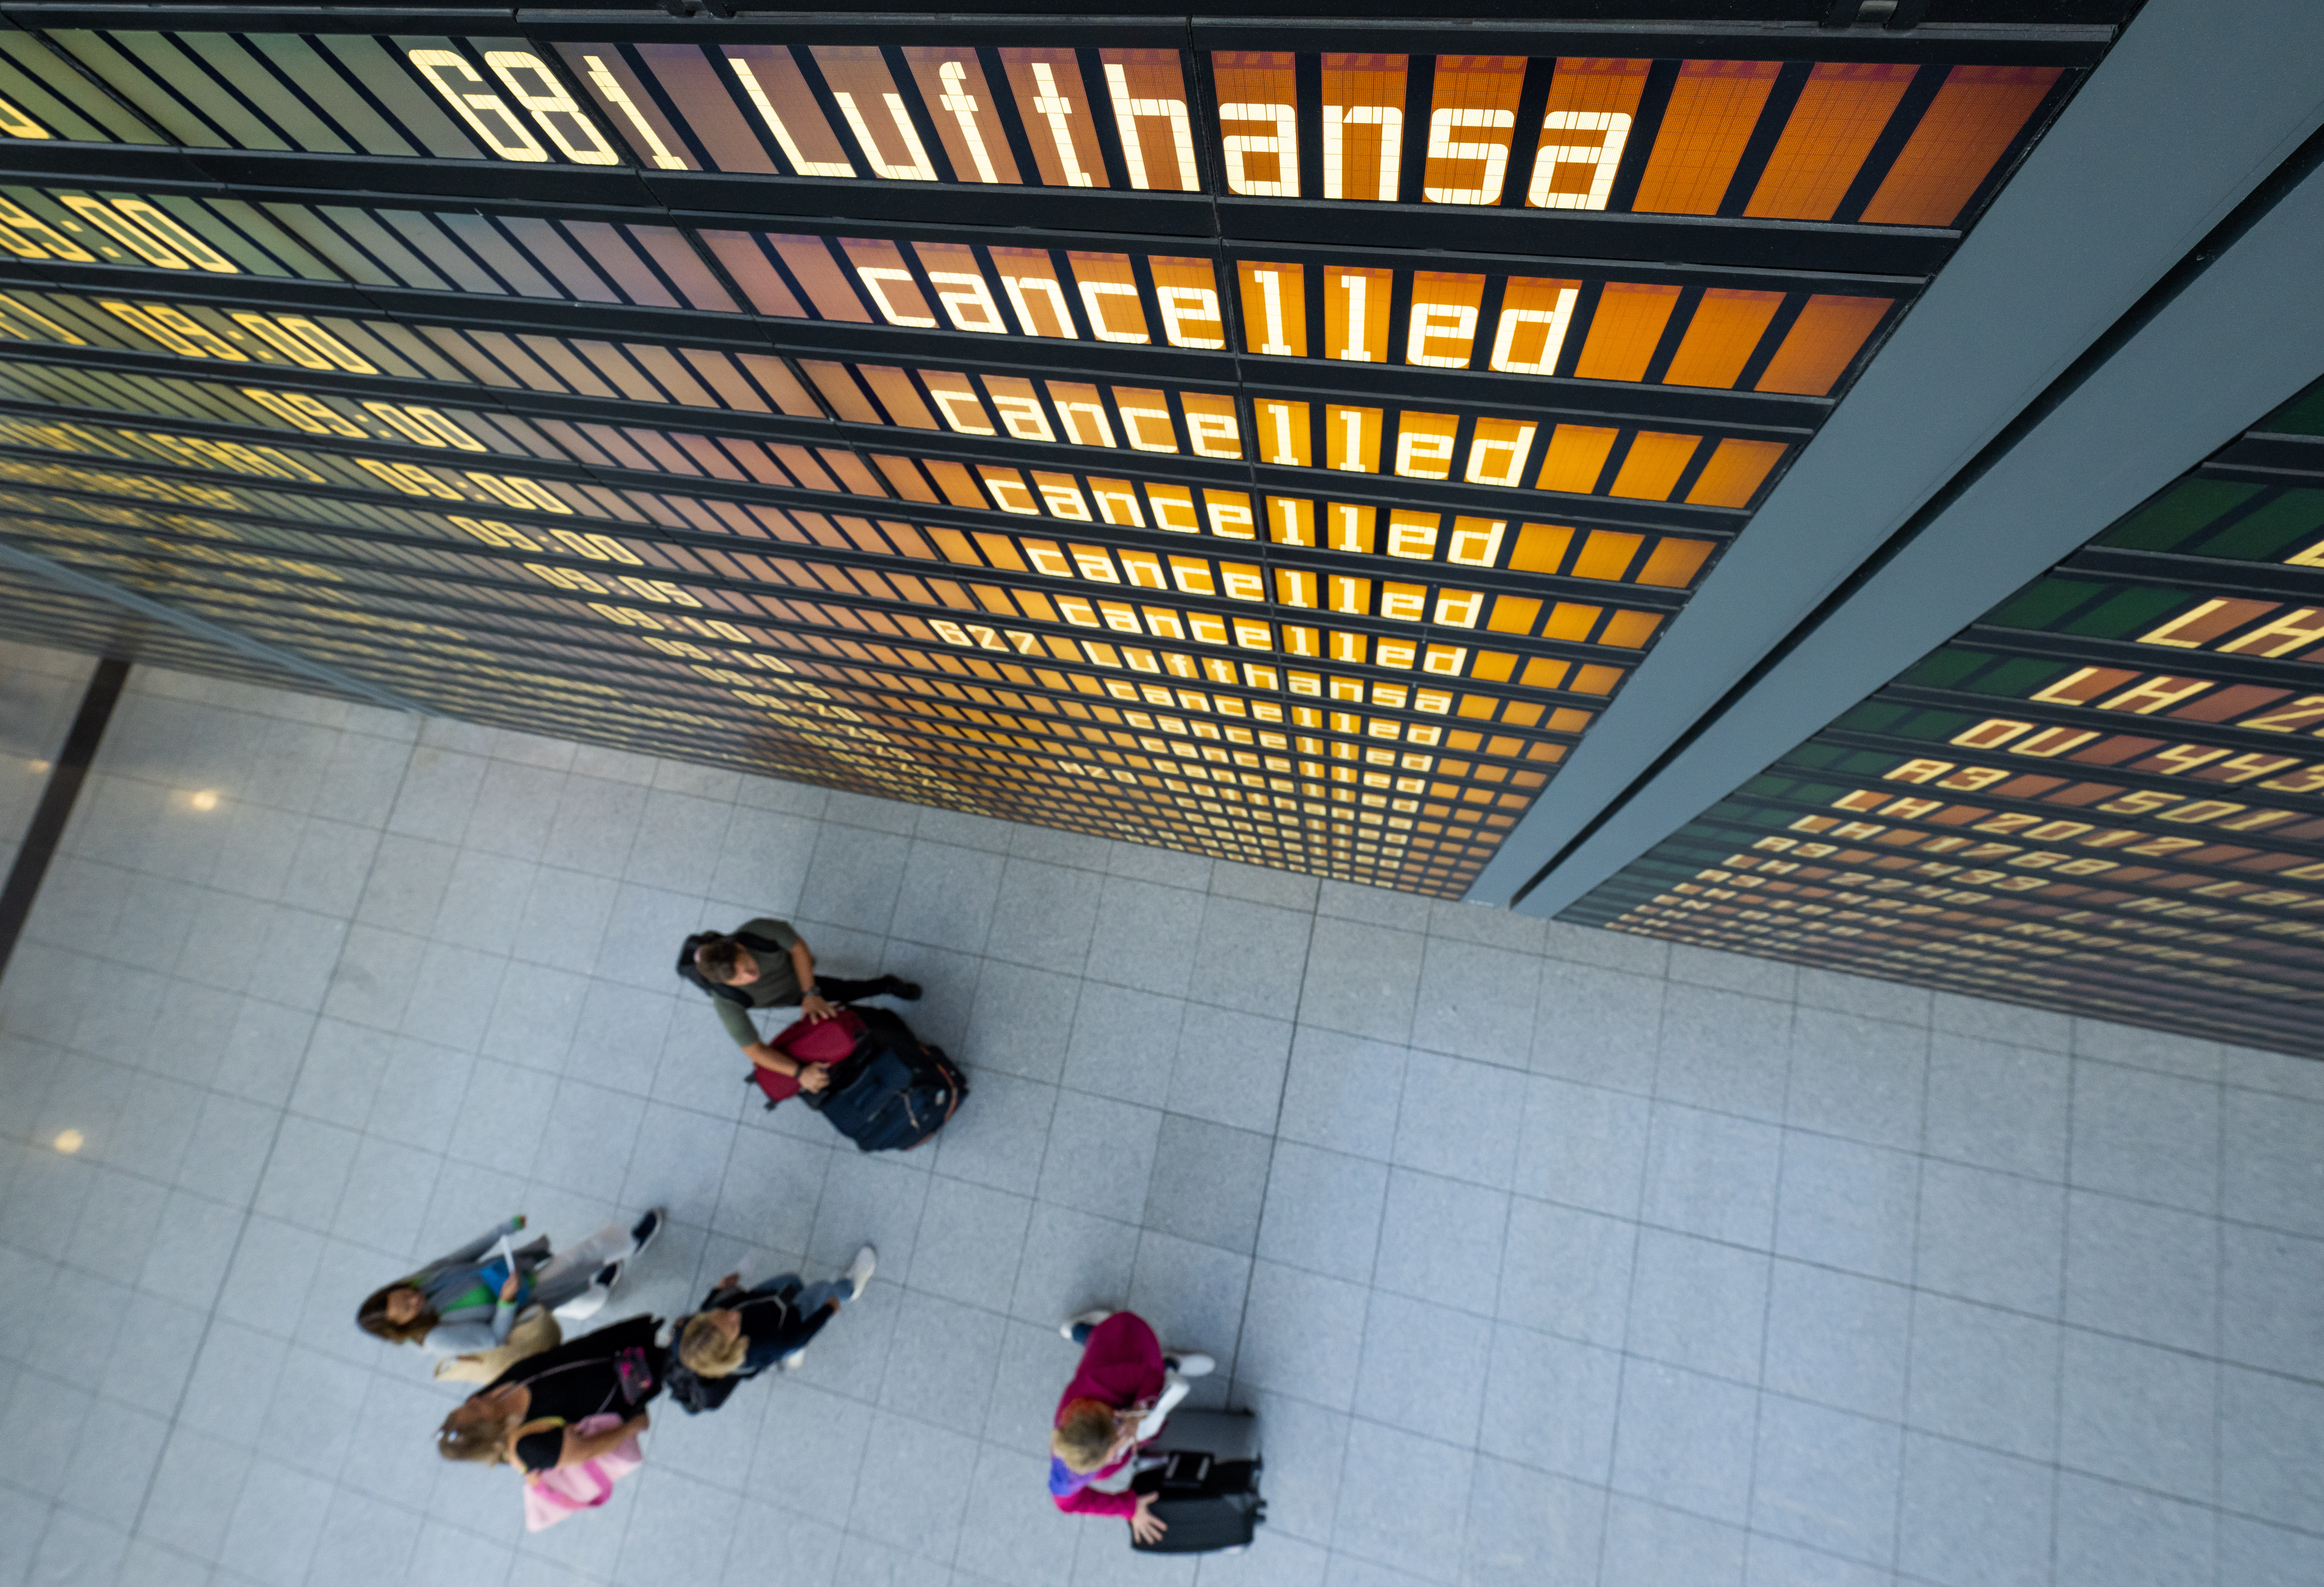 Die Worte "Lufthansa" und "cancelled" sind an einer Anzeigetafel am Flughafen zu lesen.